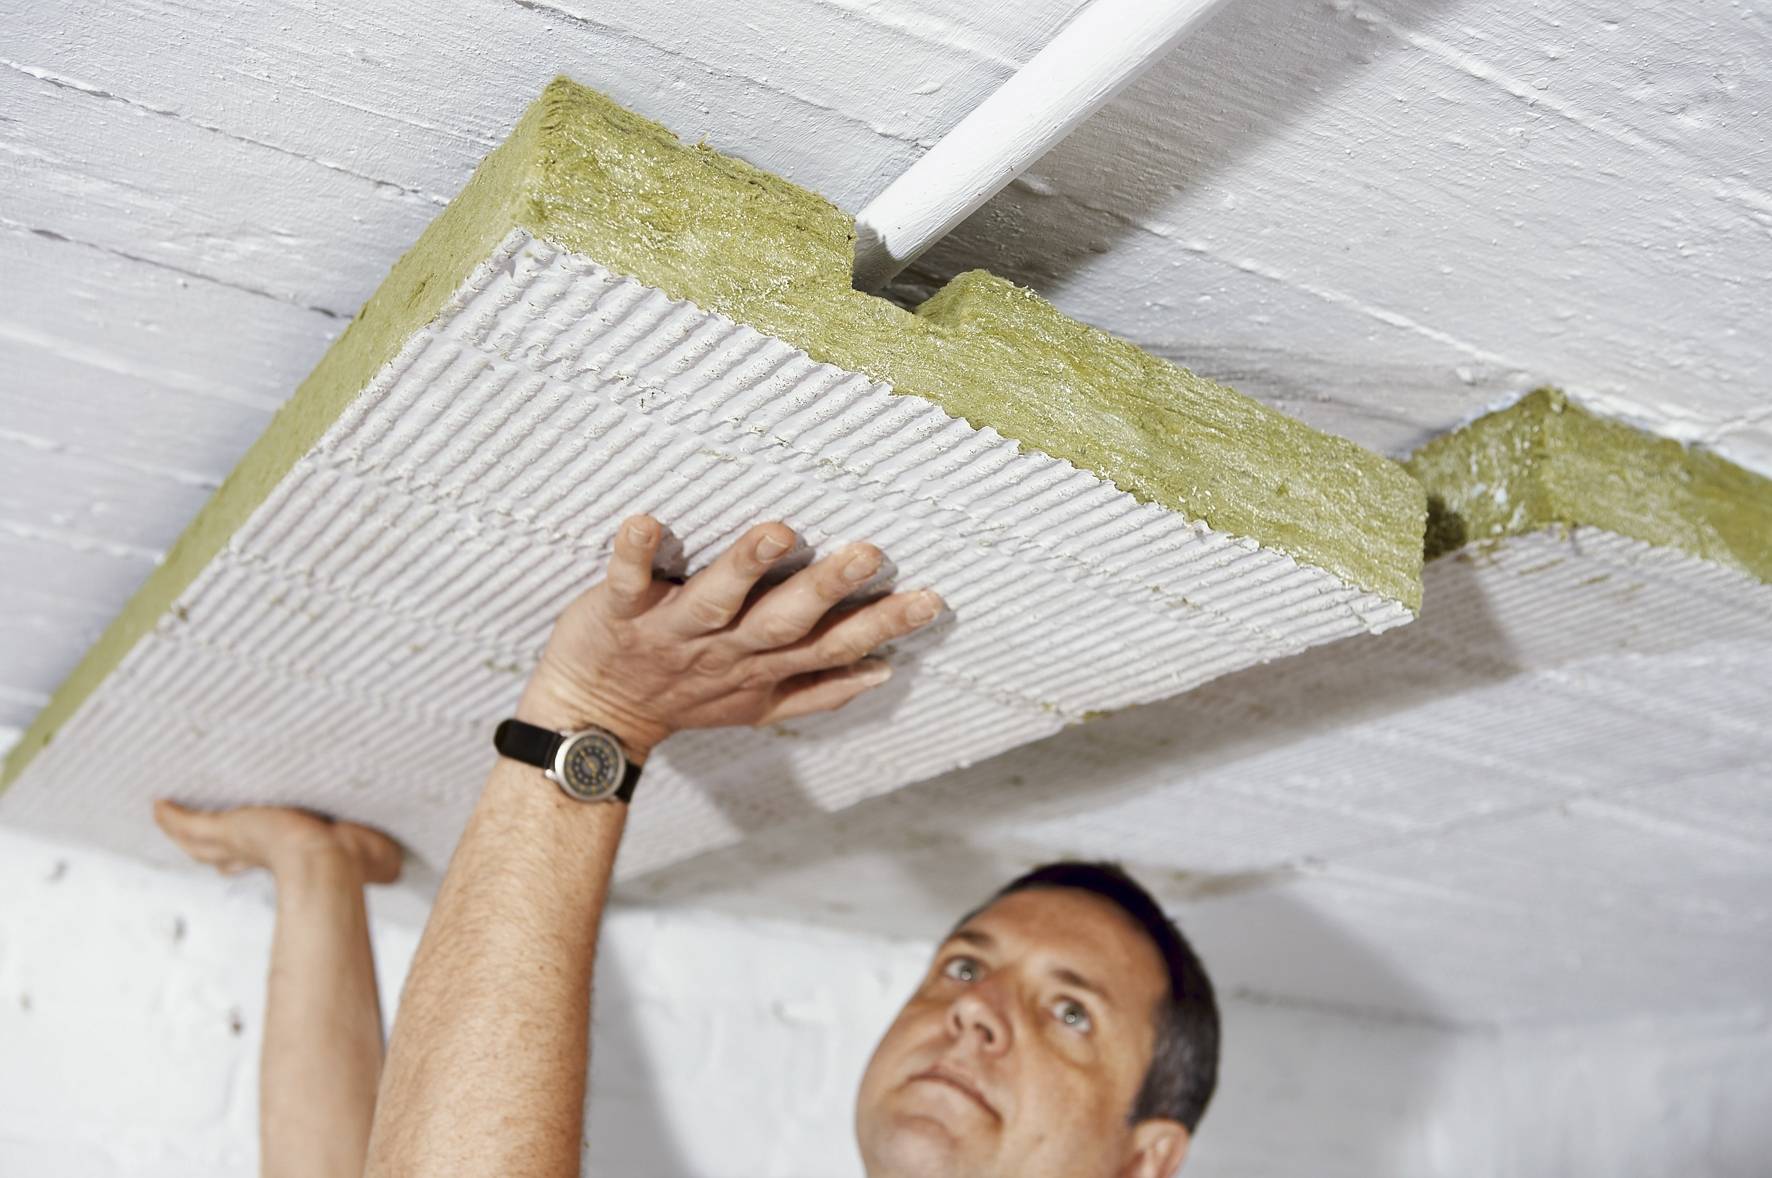 Утепление потолка в частном доме — обзор материалов и способов монтажа утеплителя